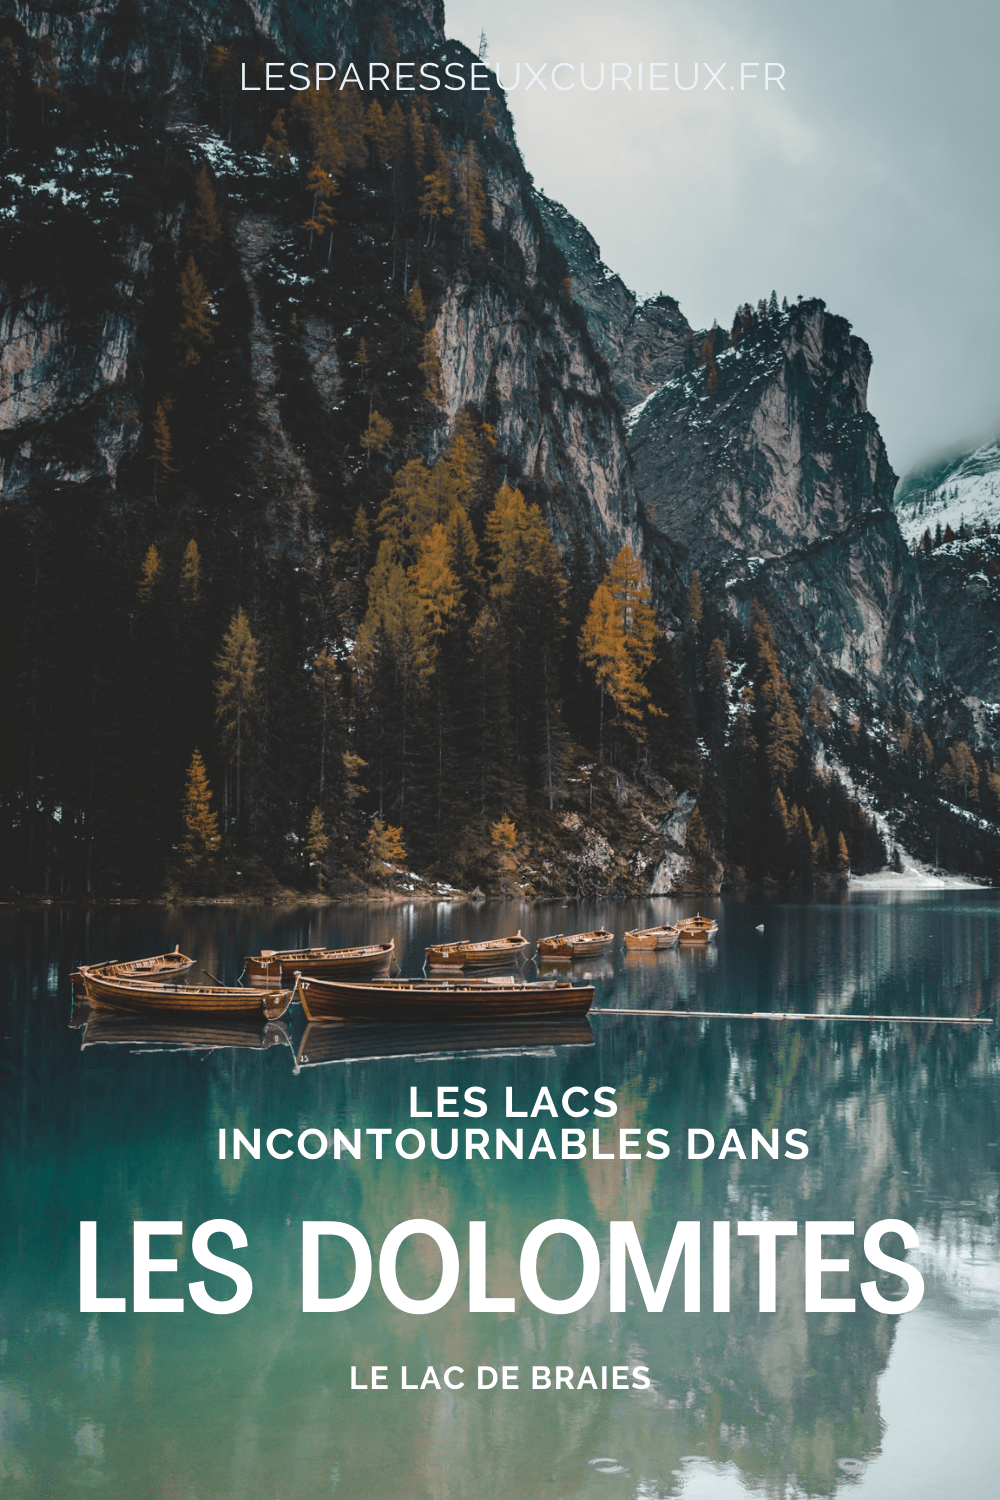 lago di brai : incontournable lacs dans les Dolomites